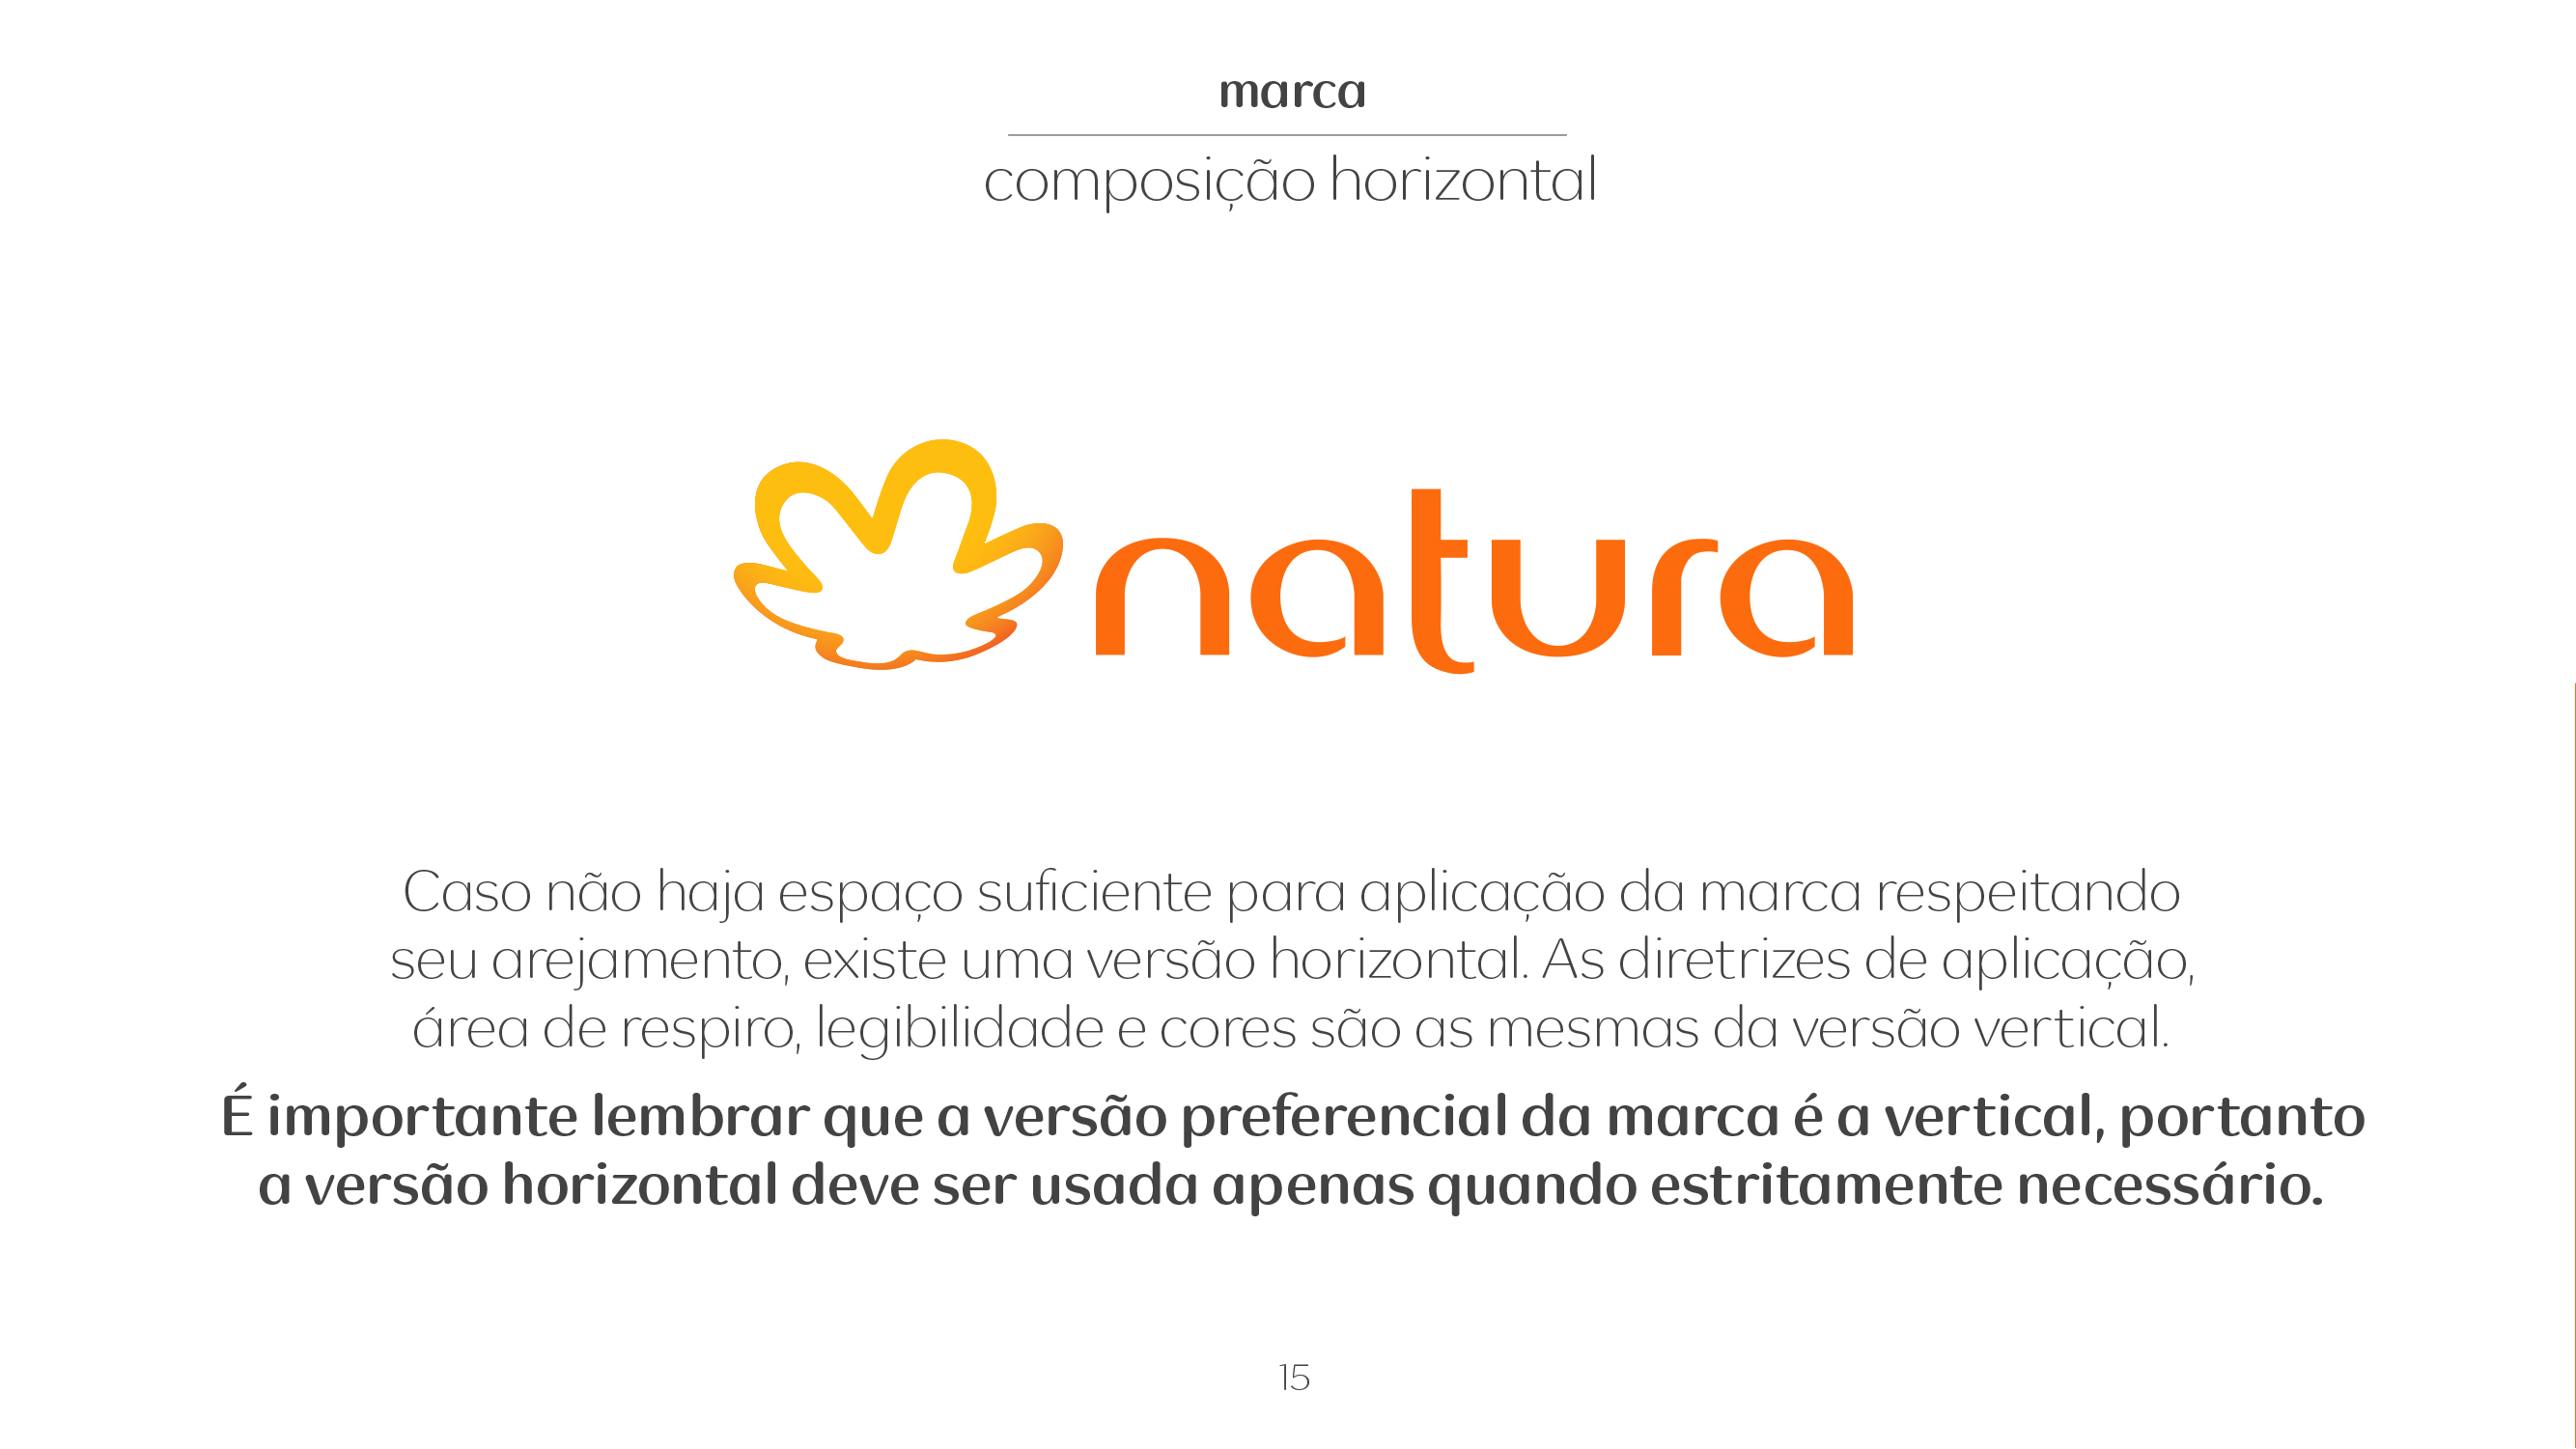 logo natura - Nino Alexandre